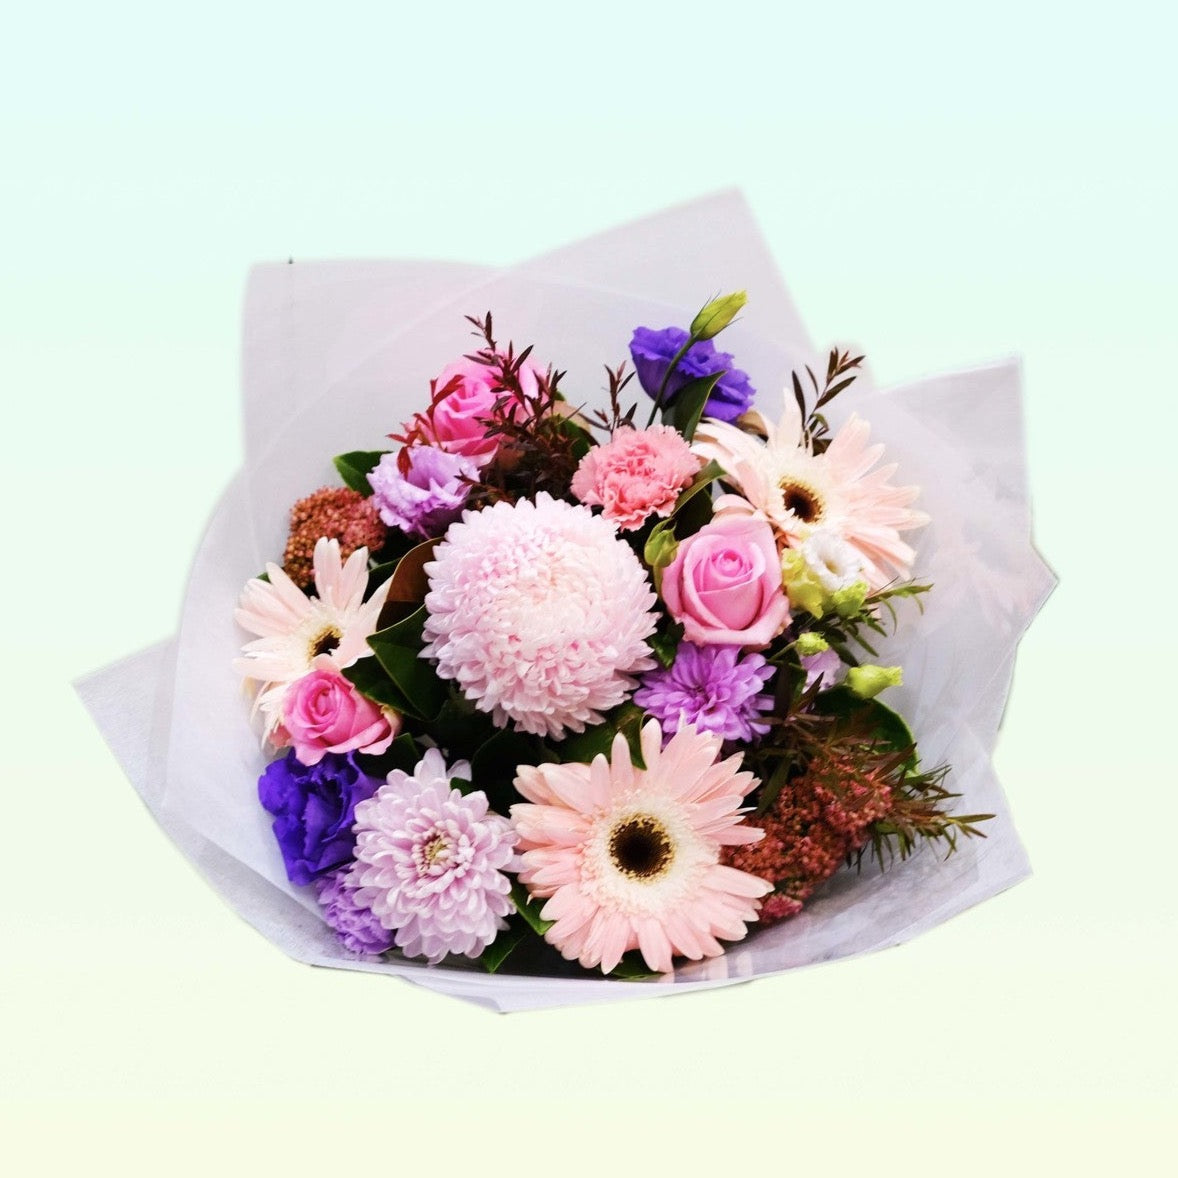 FLORAL FANTASIA | Mixed Pastel Bouquet